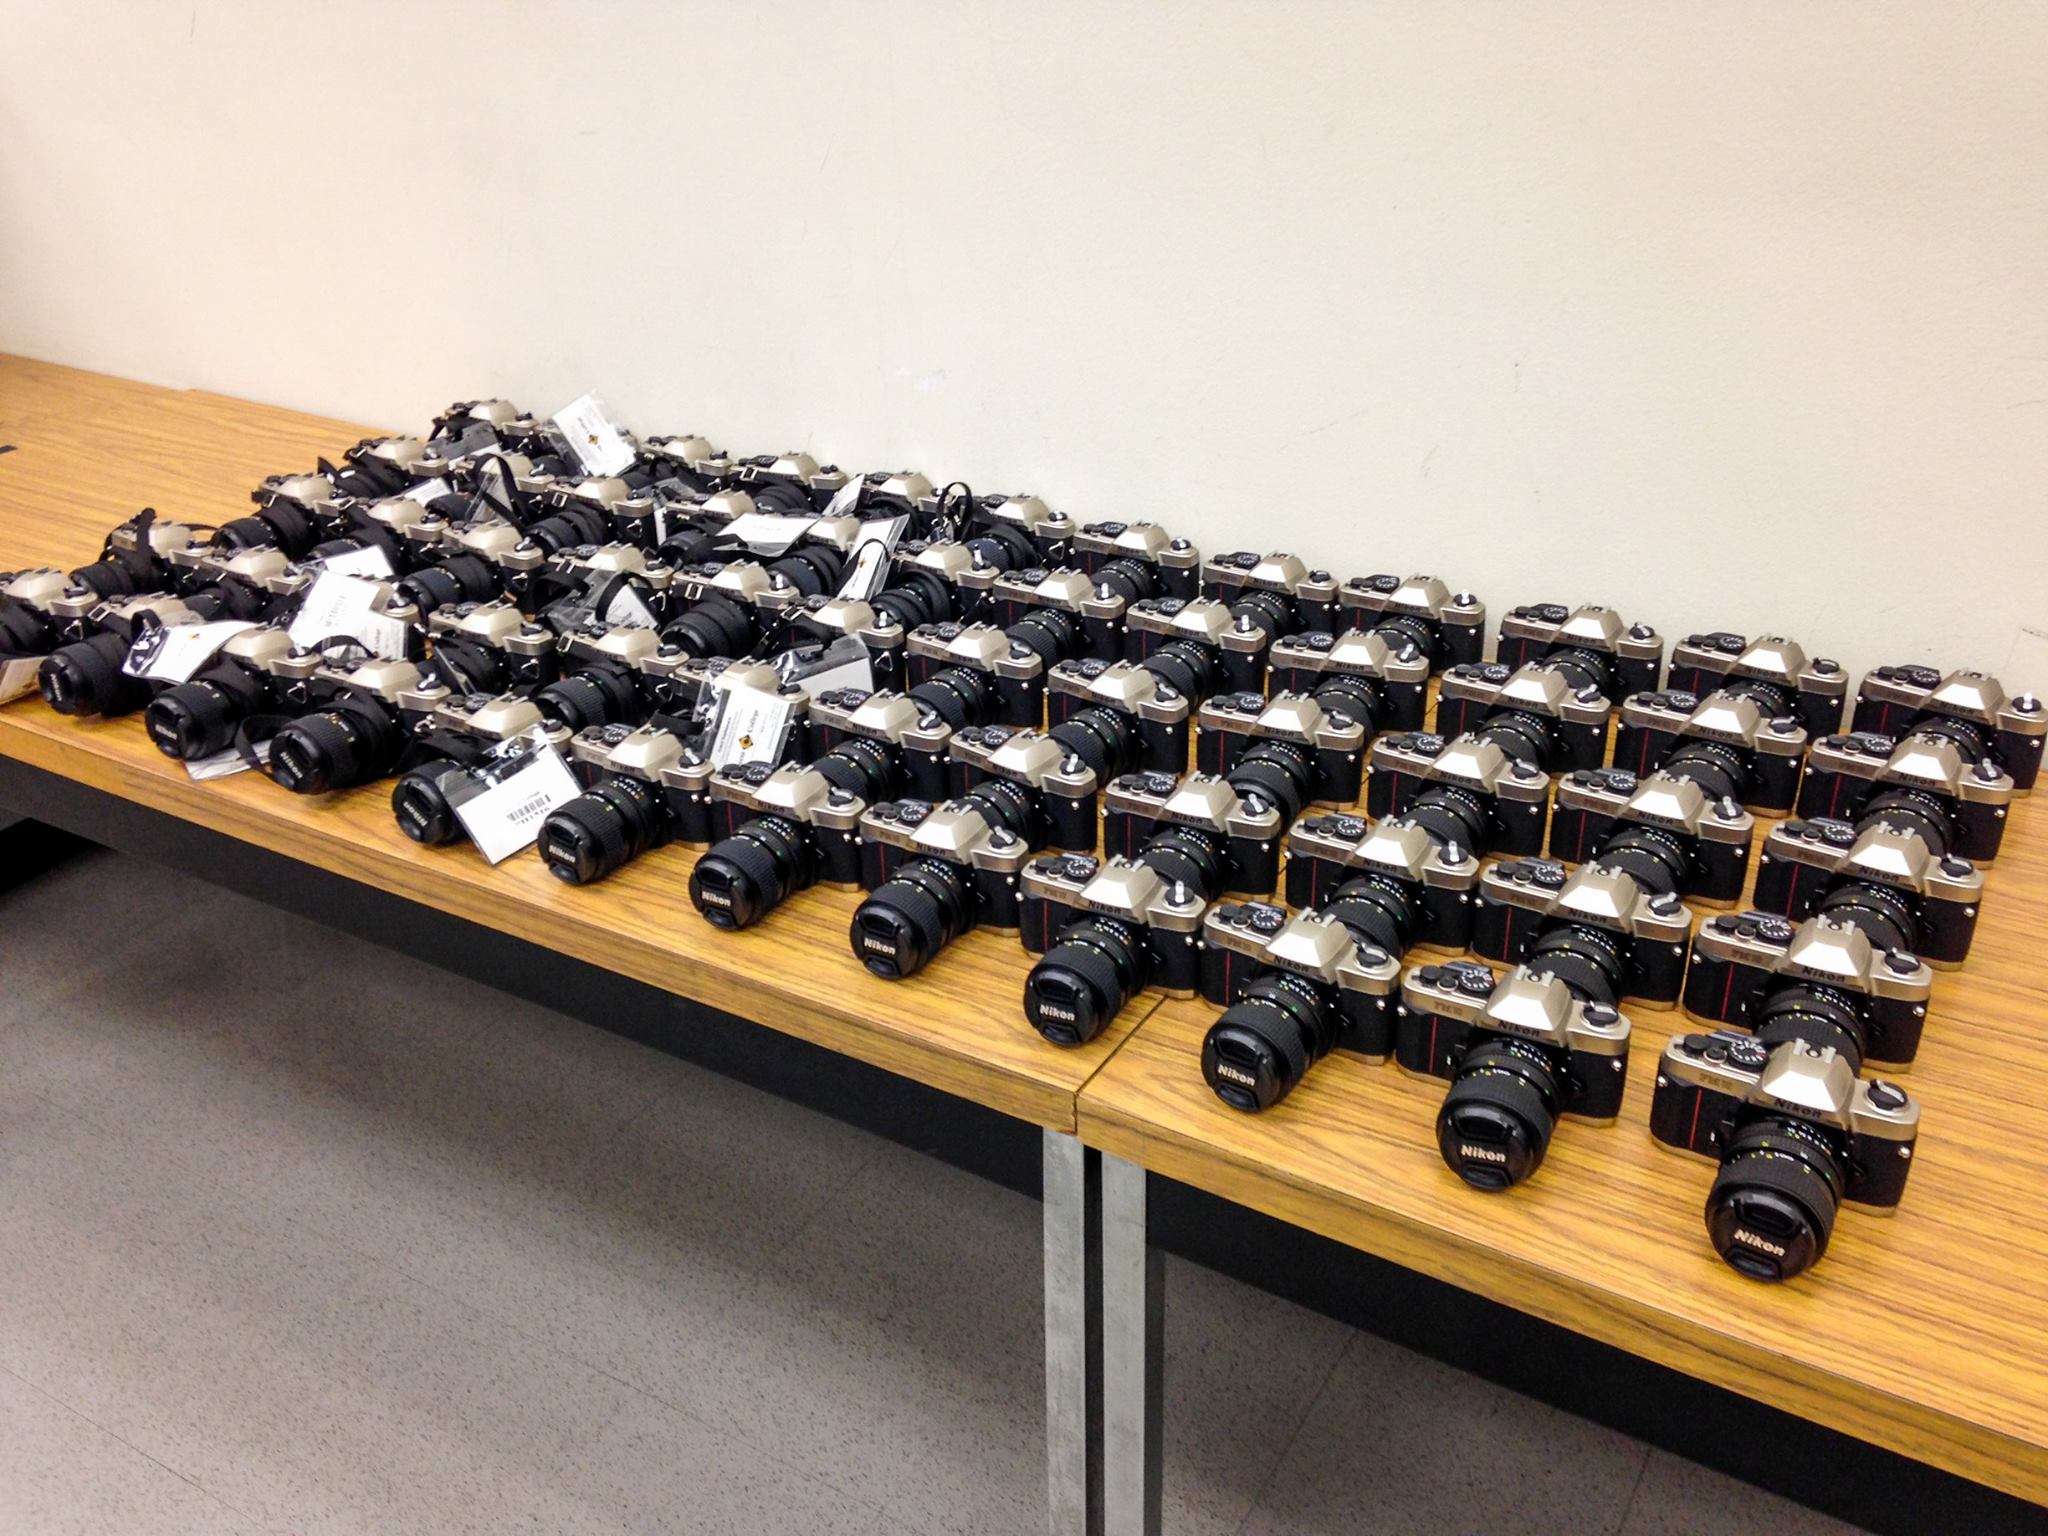 Rows of Nikon cameras